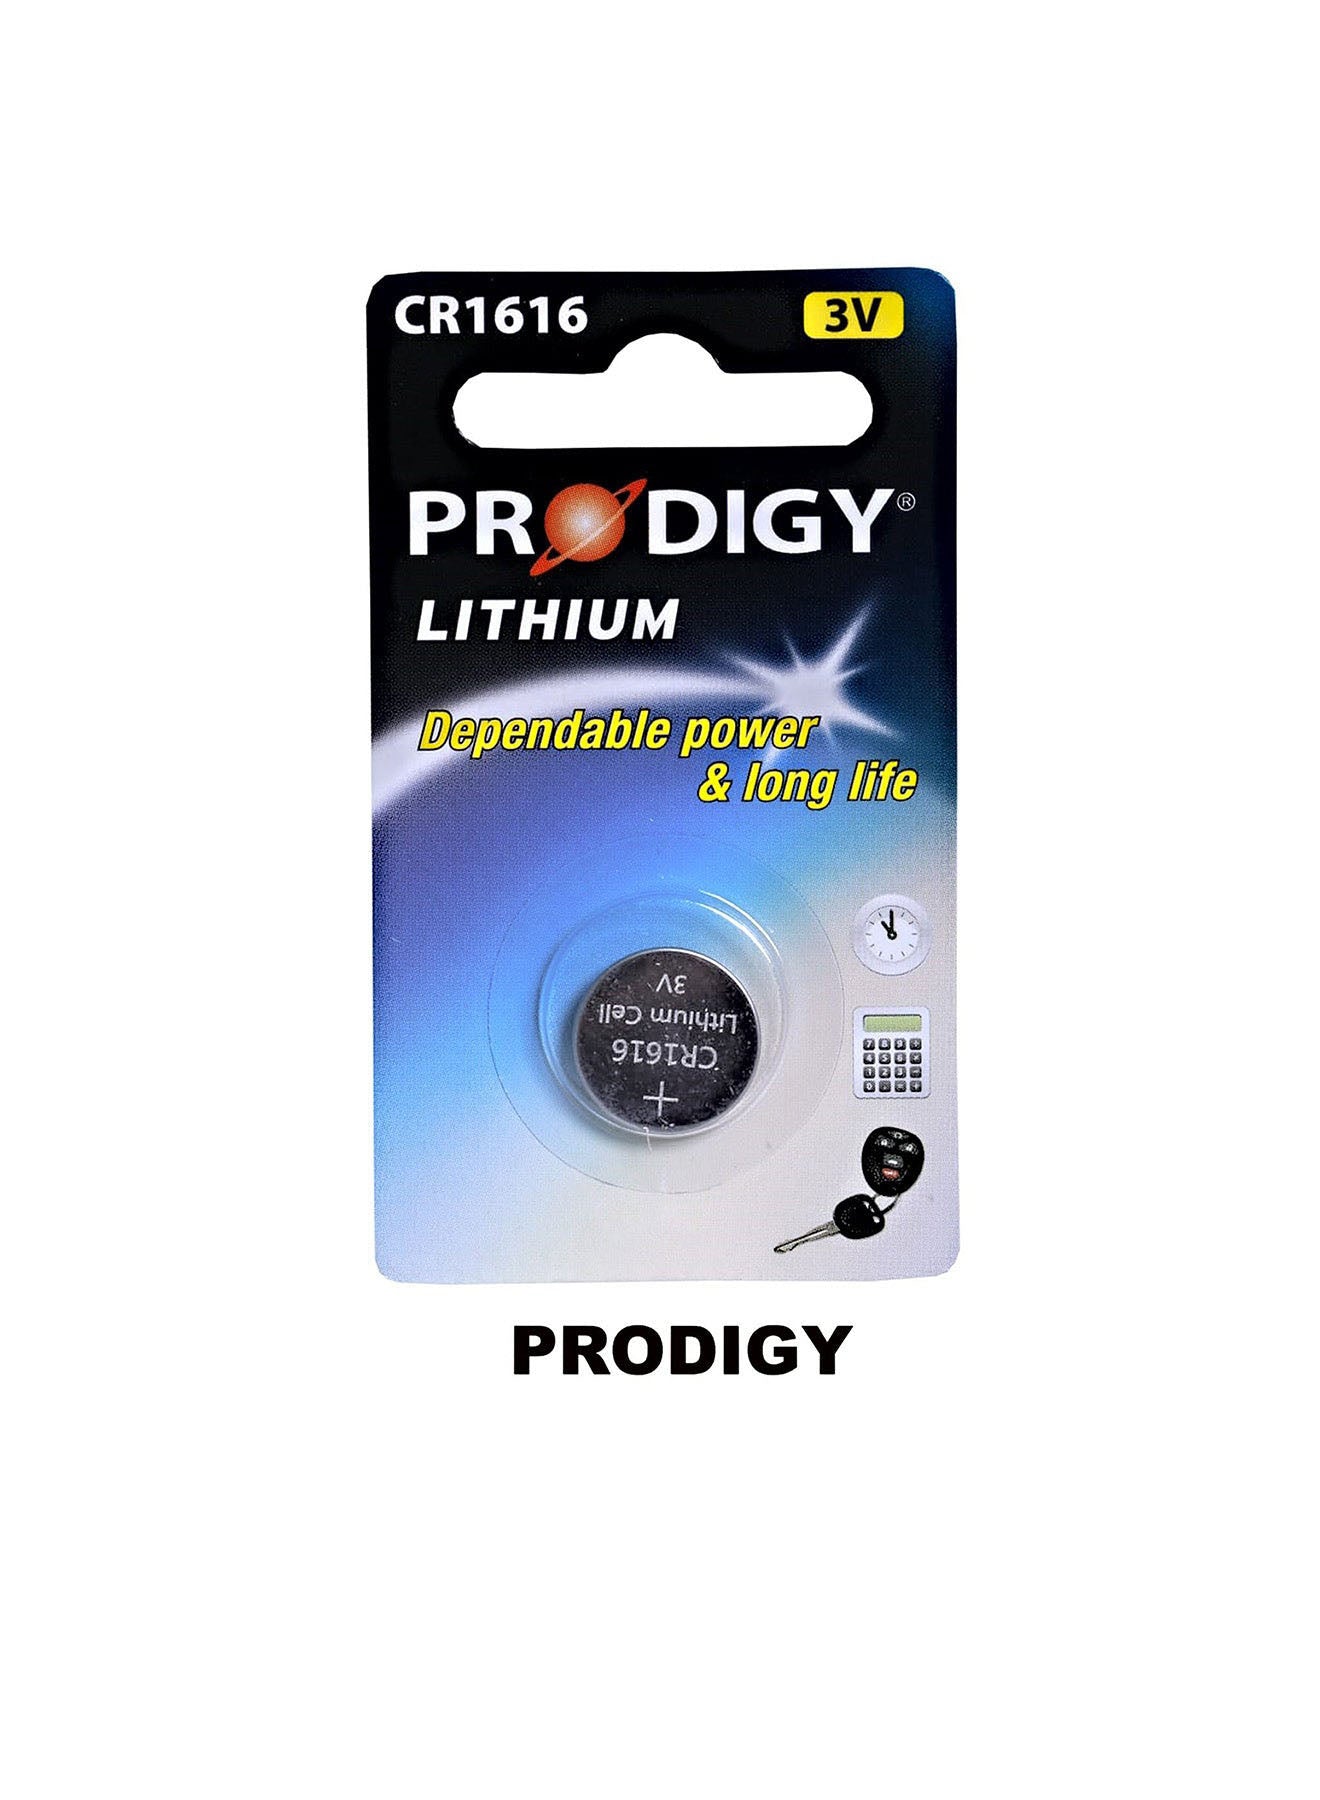 Prodigy Lithium CR1616 3V